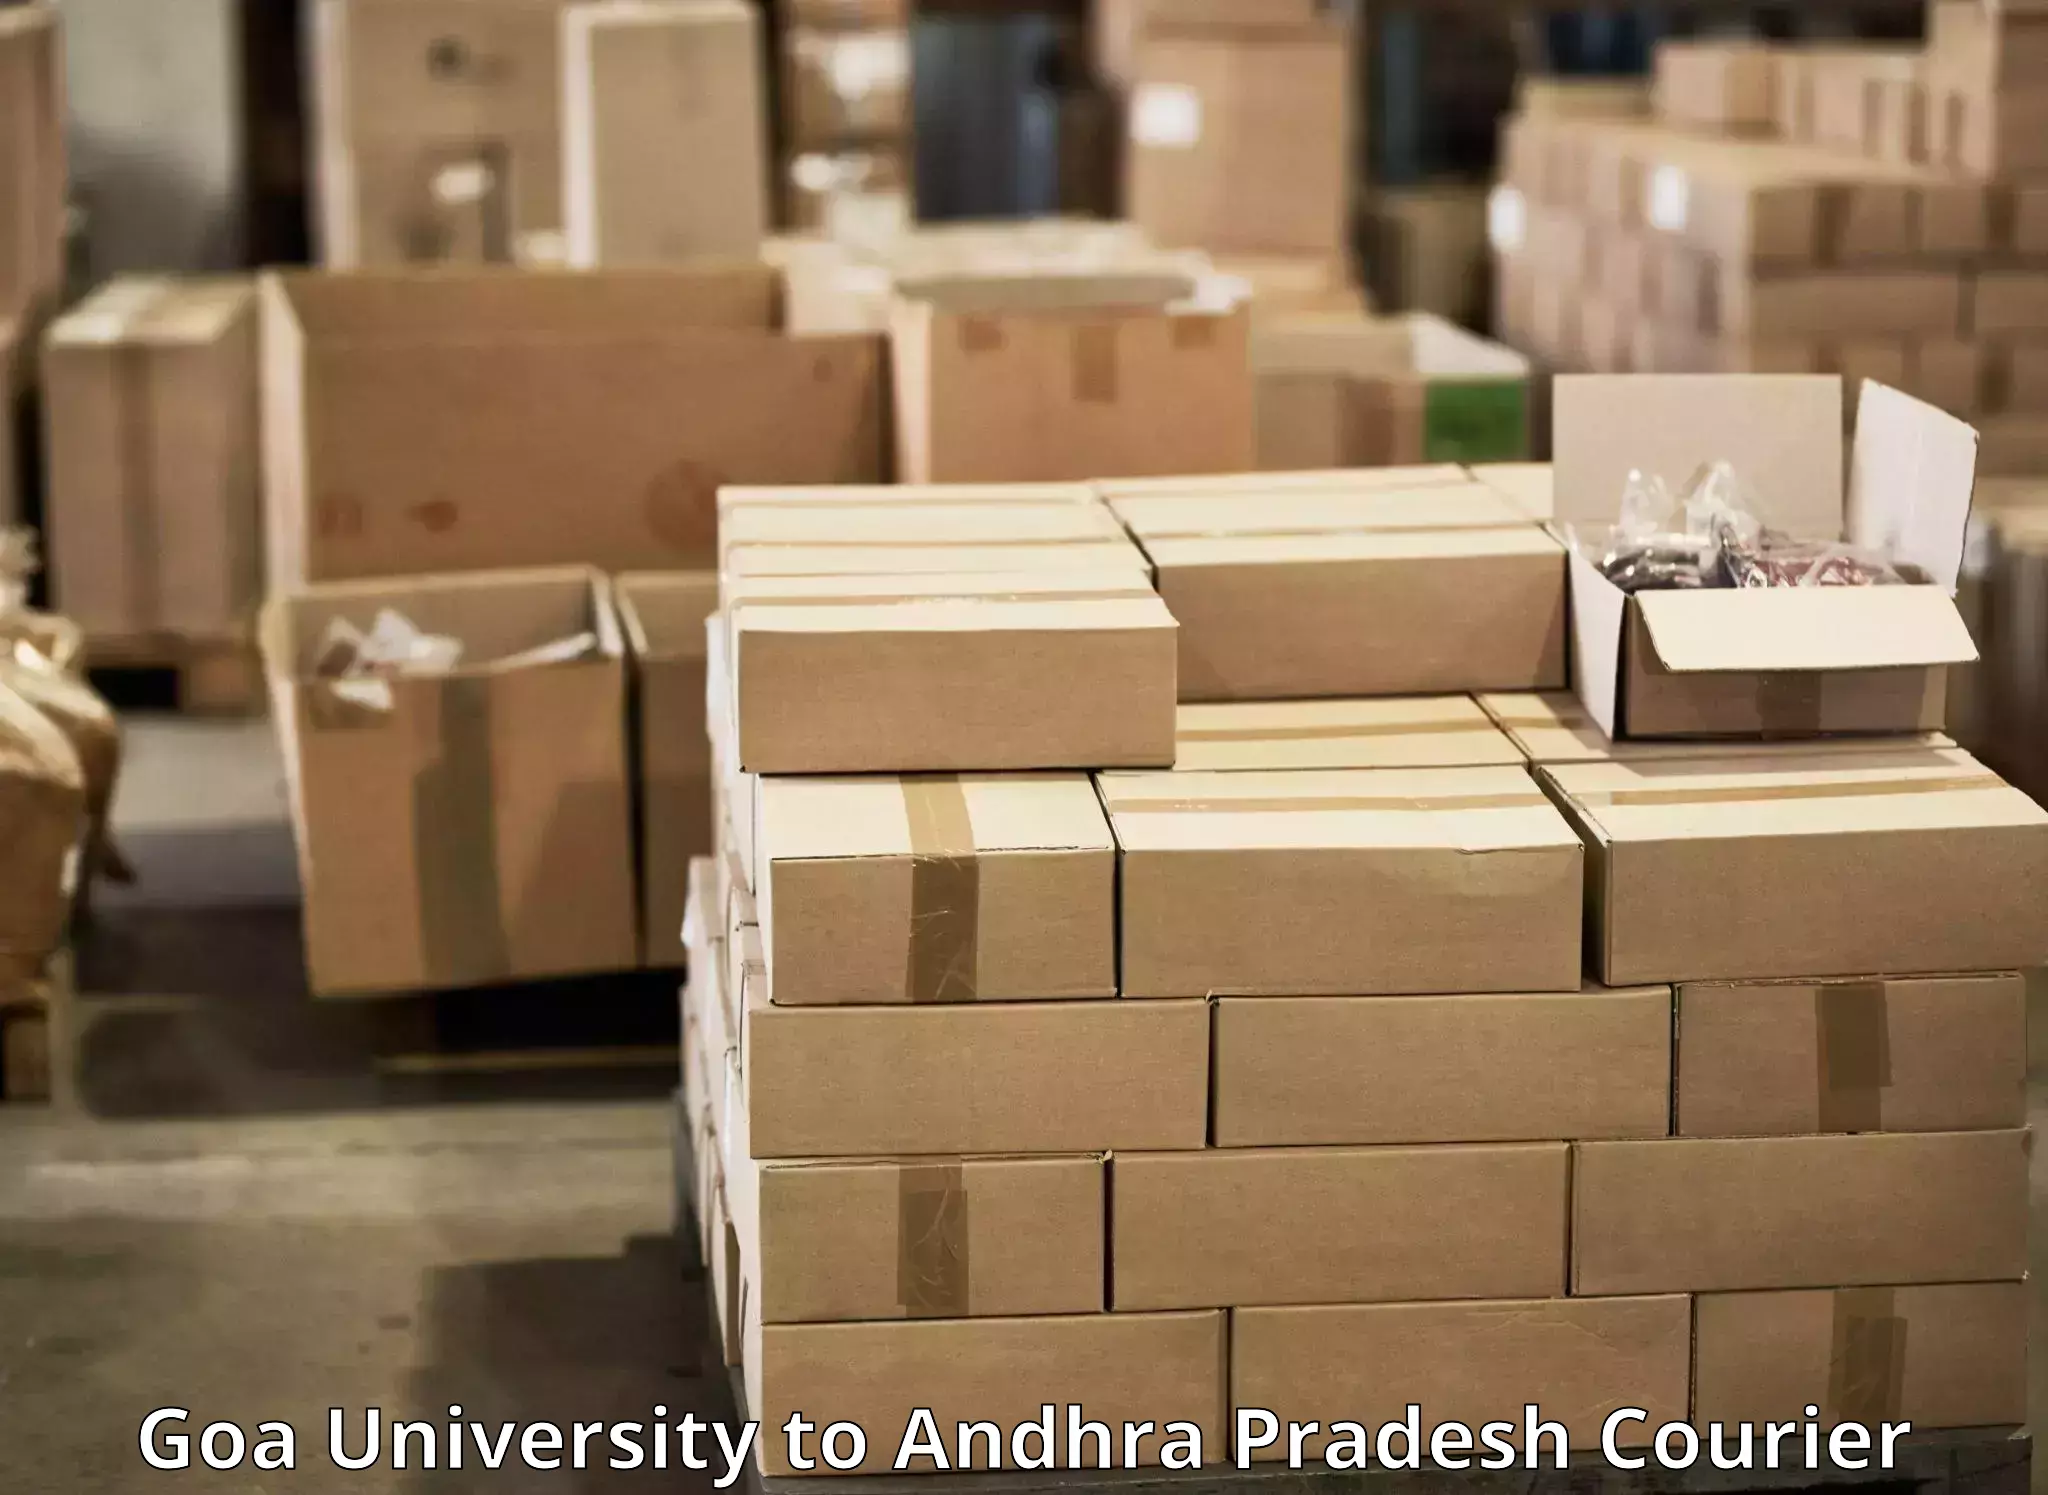 High-capacity parcel service Goa University to Chitrada